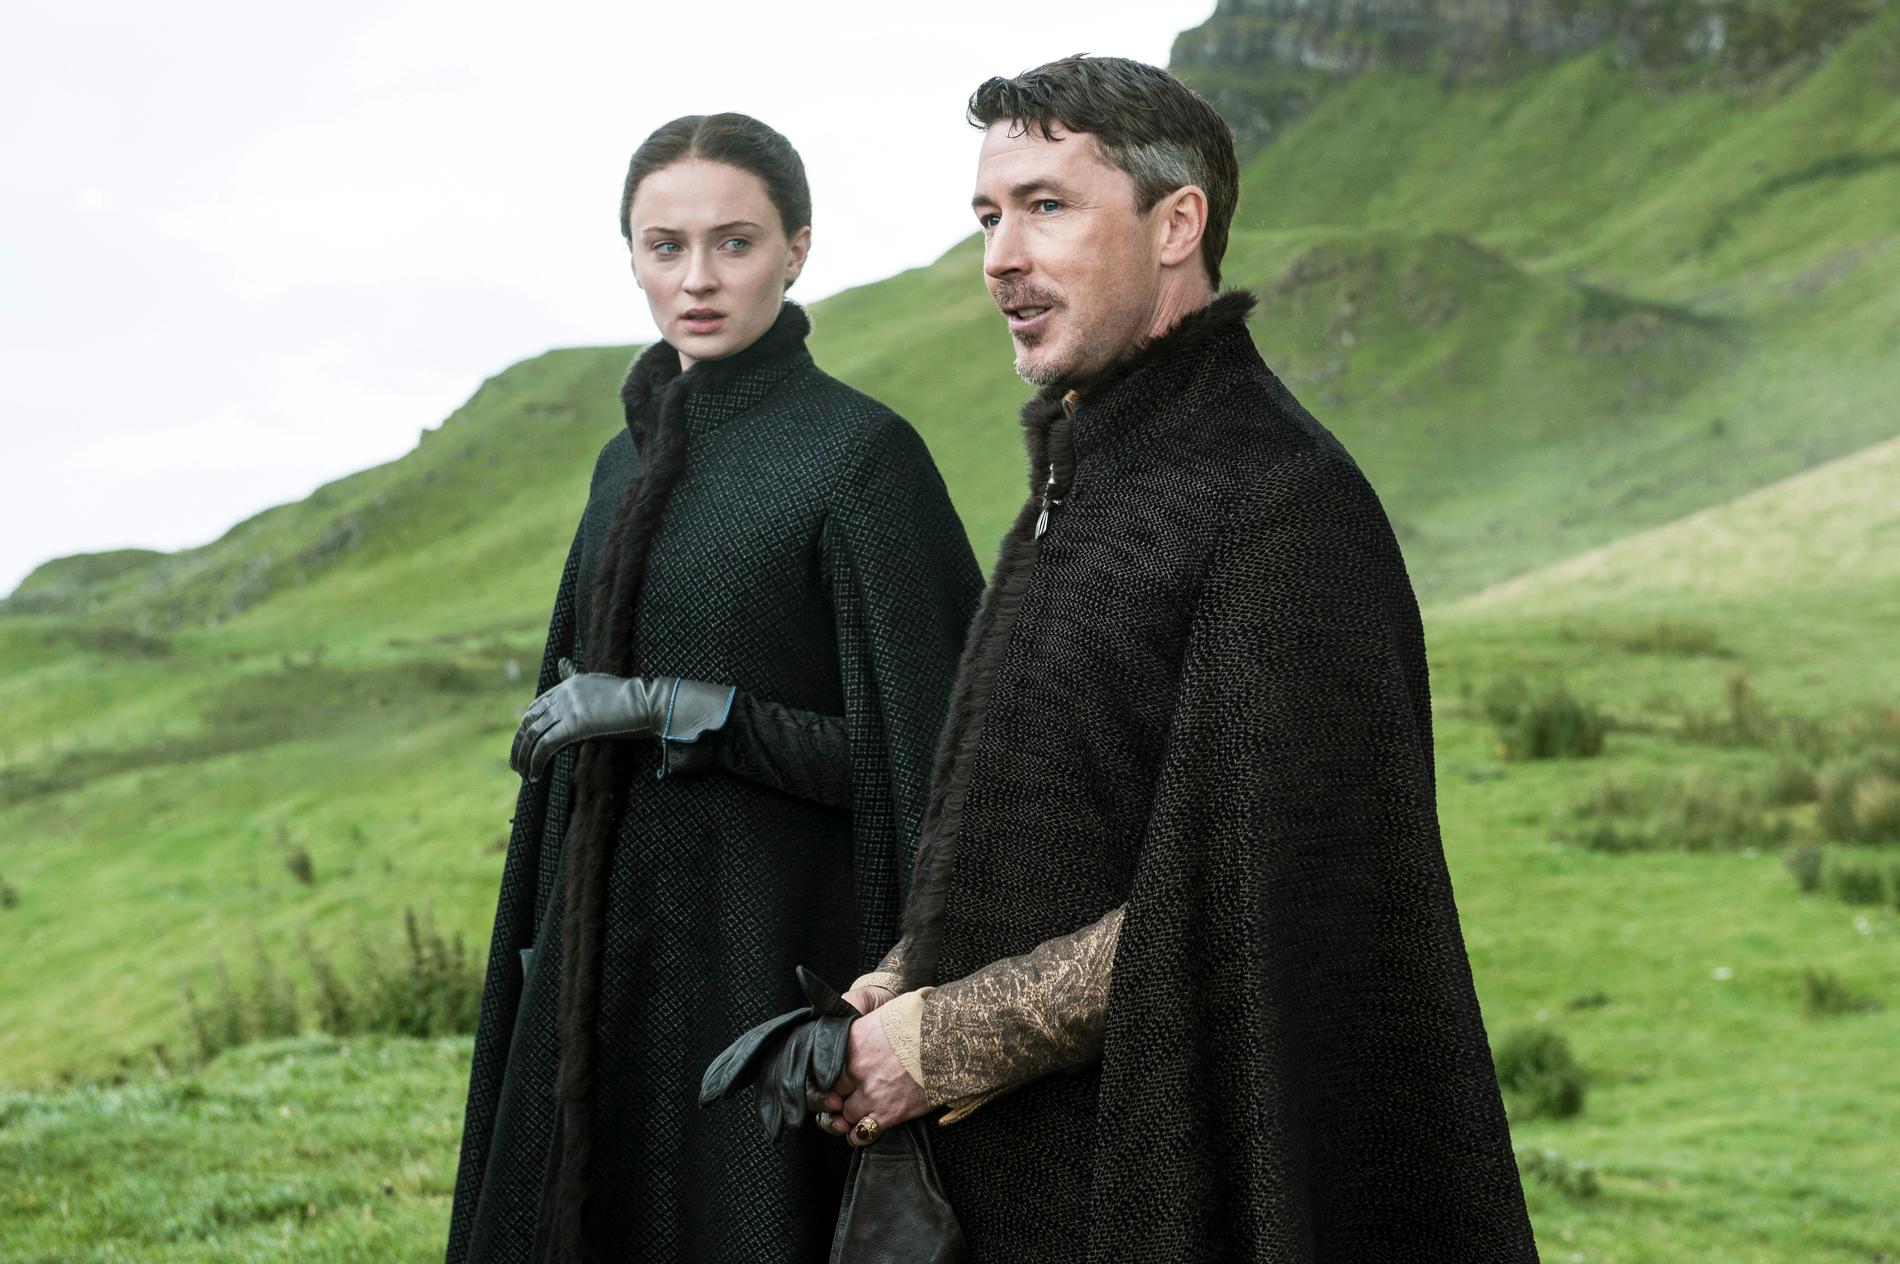 En stor del av "Game of thrones" spelas in i Nordirland som sedan tidigare ger serien statligt ekonomiskt stöd. På bilden syns karaktärerna Sansa Stark (Sophie Turner) till vänster och Petyr "Littlefinger" Baelish (Aidan Gillen) till höger.